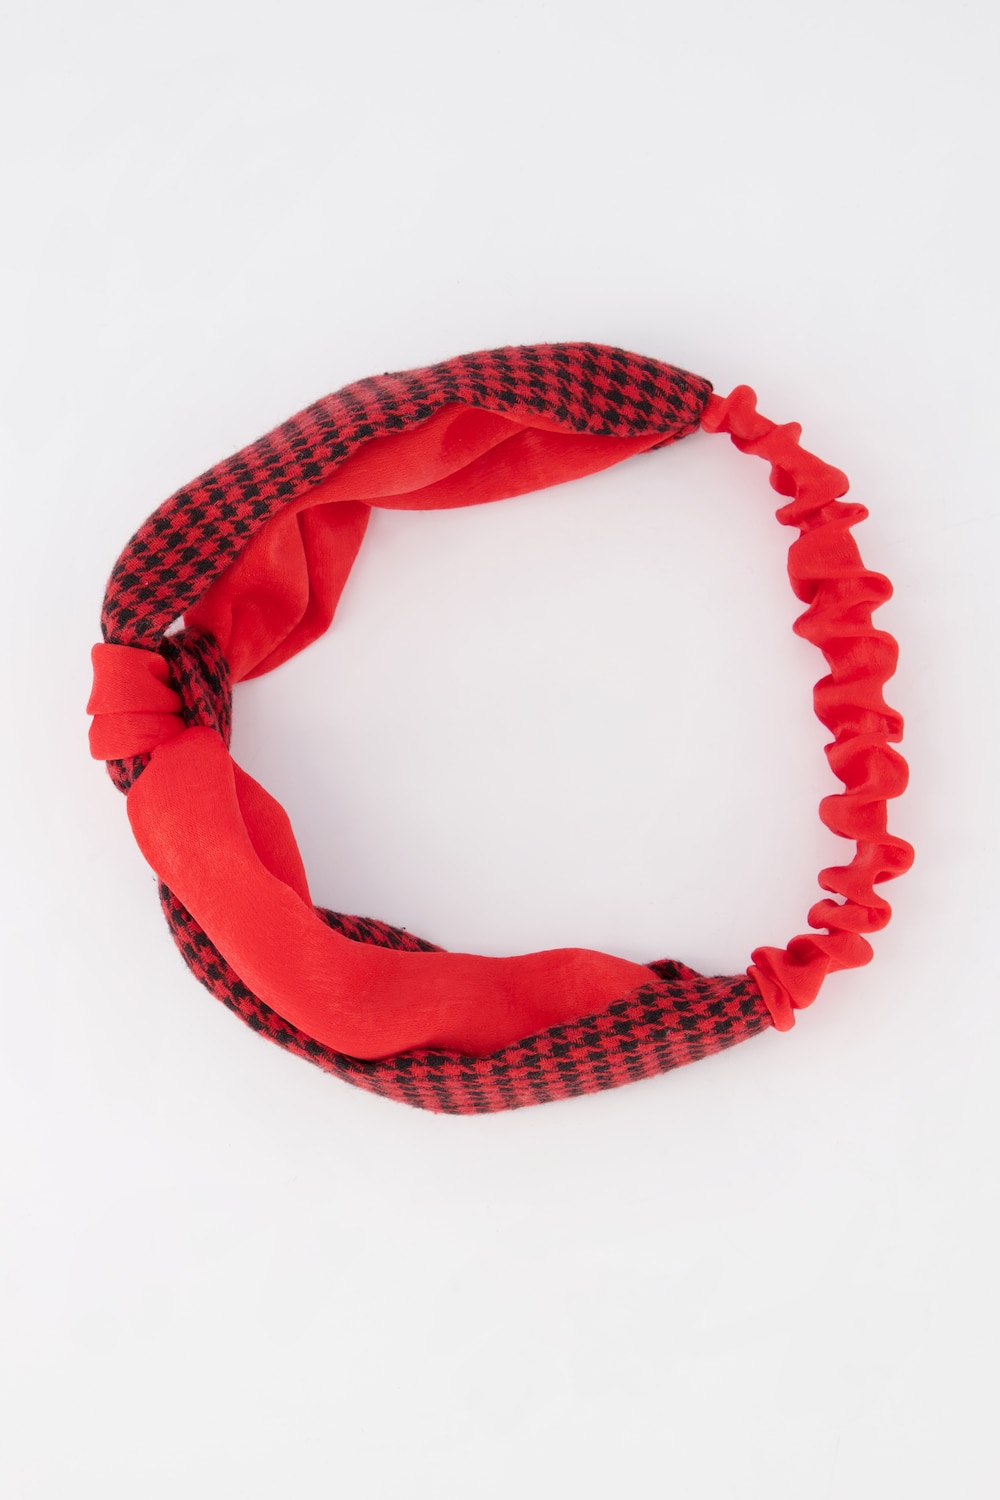 Image of Grosse Grössen Haarband, Damen, rot, Größe: One Size, Polyester, Ulla Popken